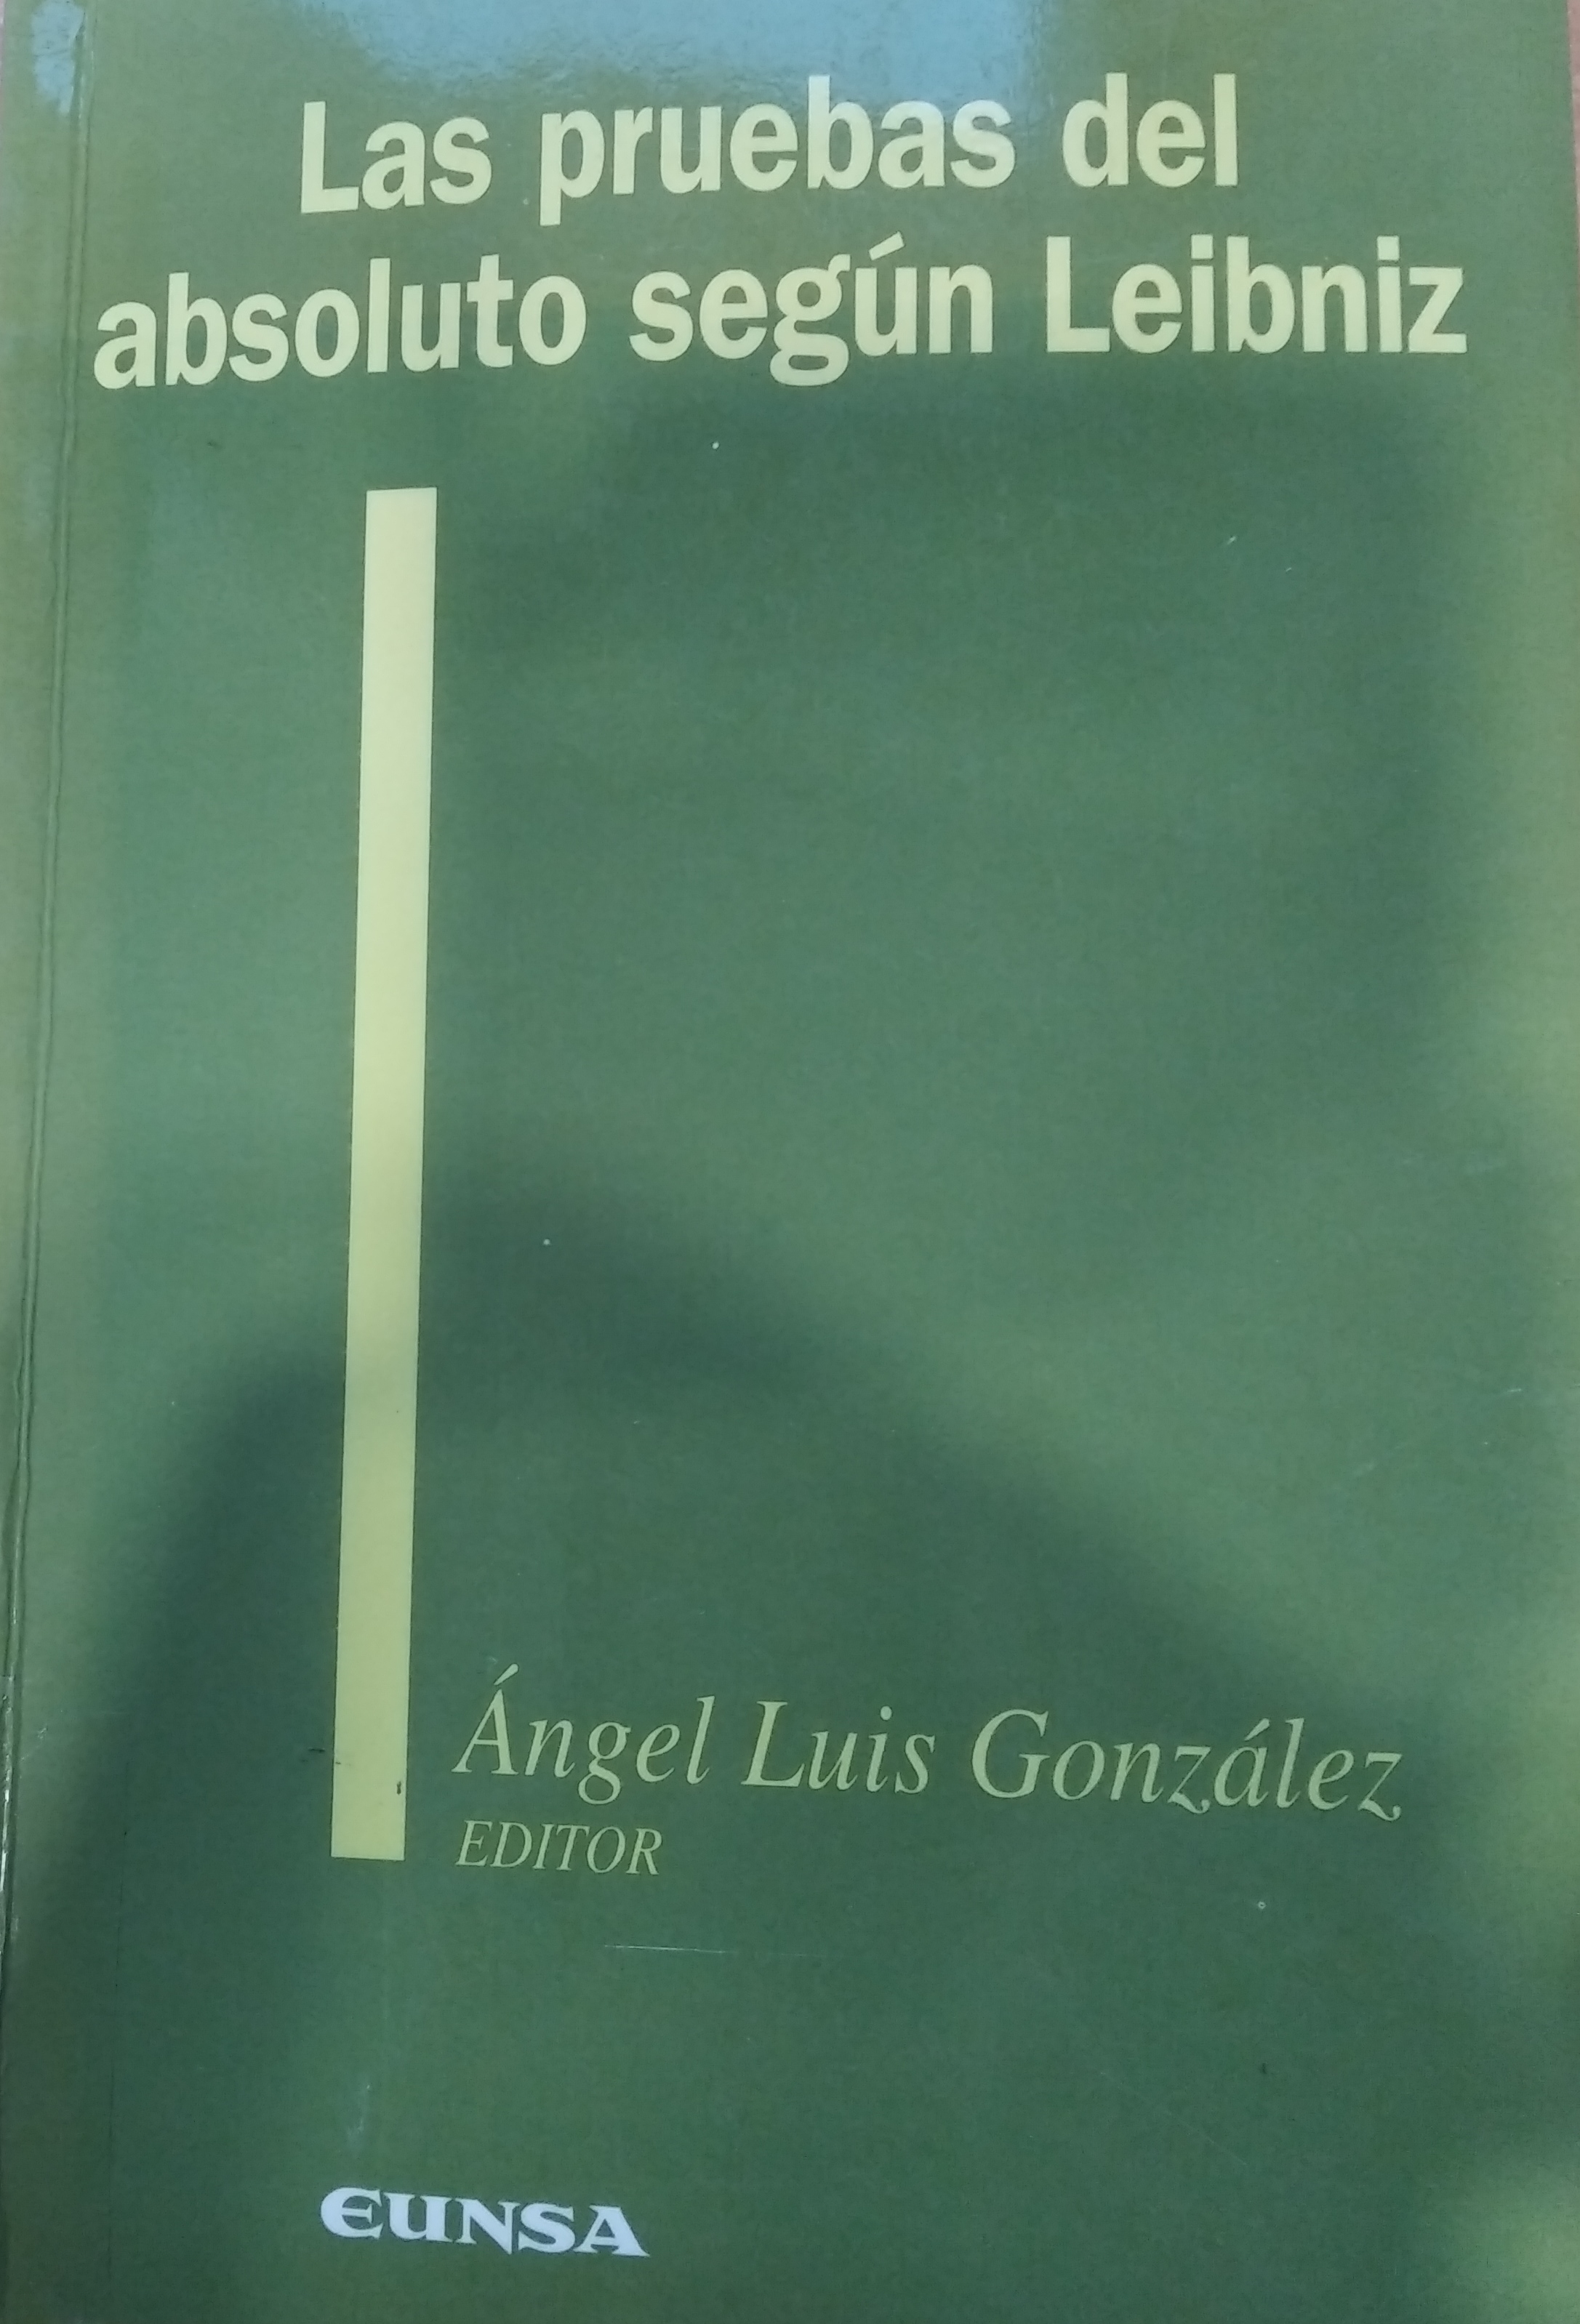 Imagen de portada del libro Las pruebas del absoluto según Leibniz